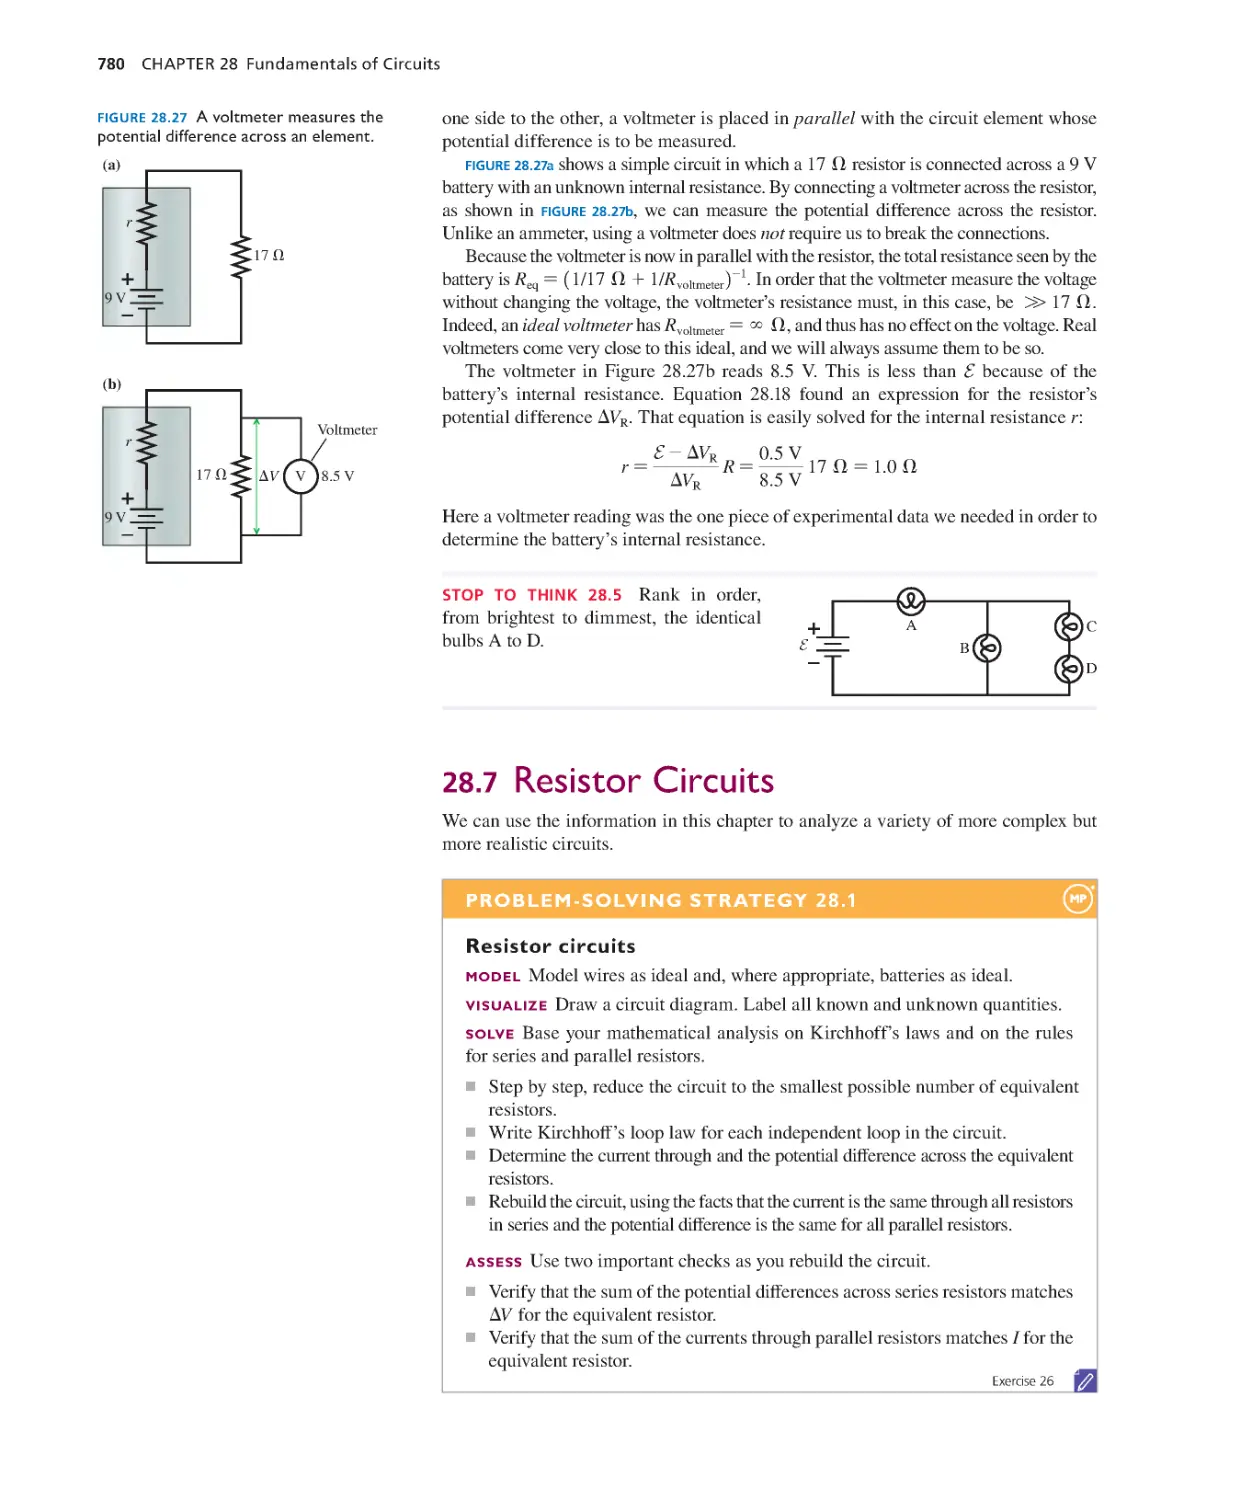 28.7. Resistor Circuits